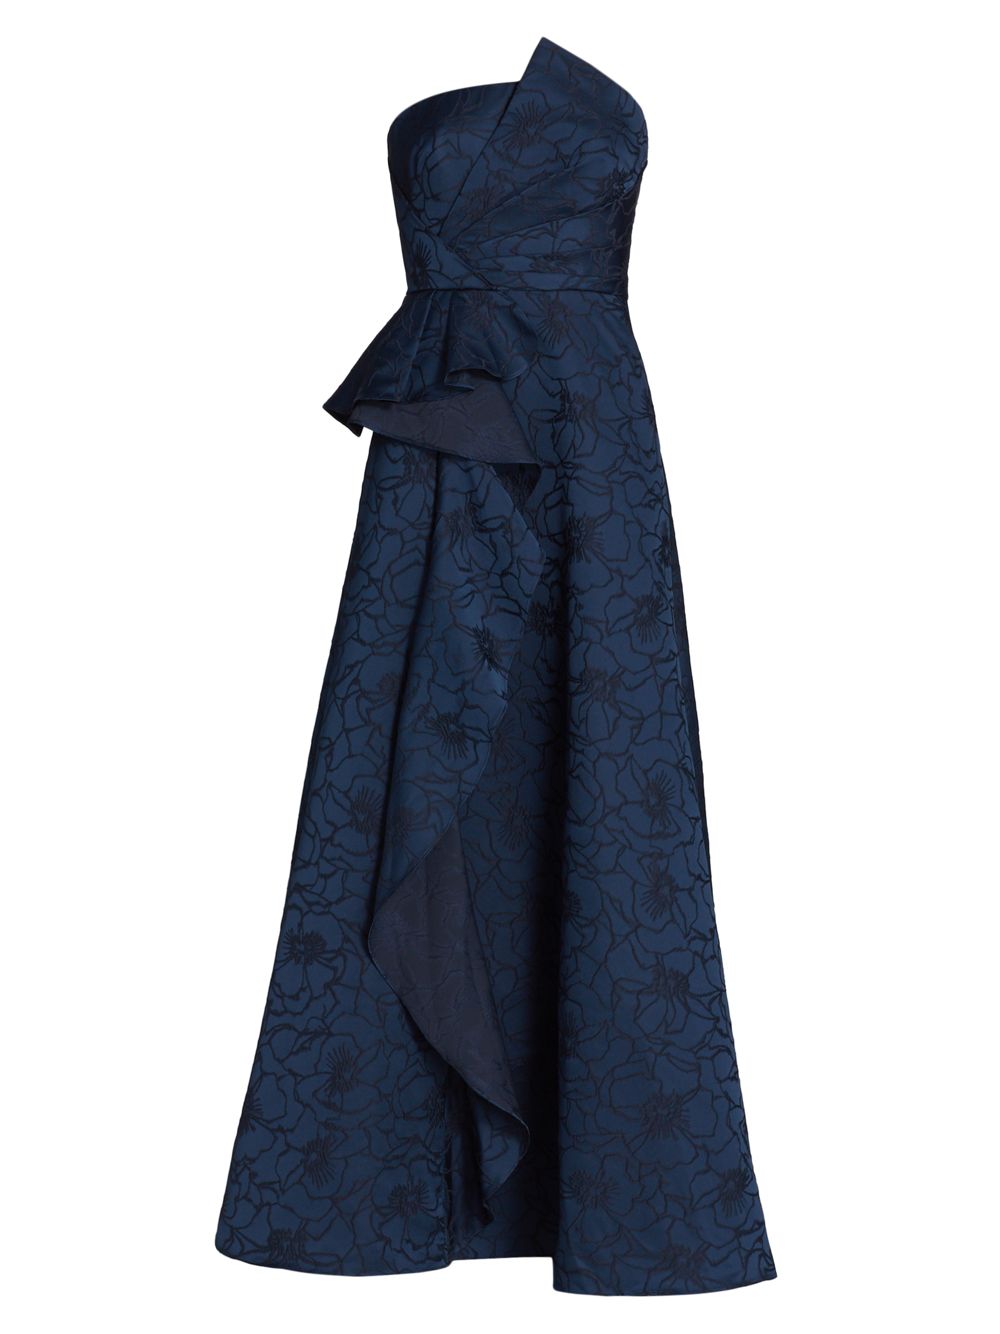 Жаккардовое бальное платье с цветочным принтом ML Monique Lhuillier, синий шифоновое платье макси melanie с цветочным принтом ml monique lhuillier цвет floral shadow